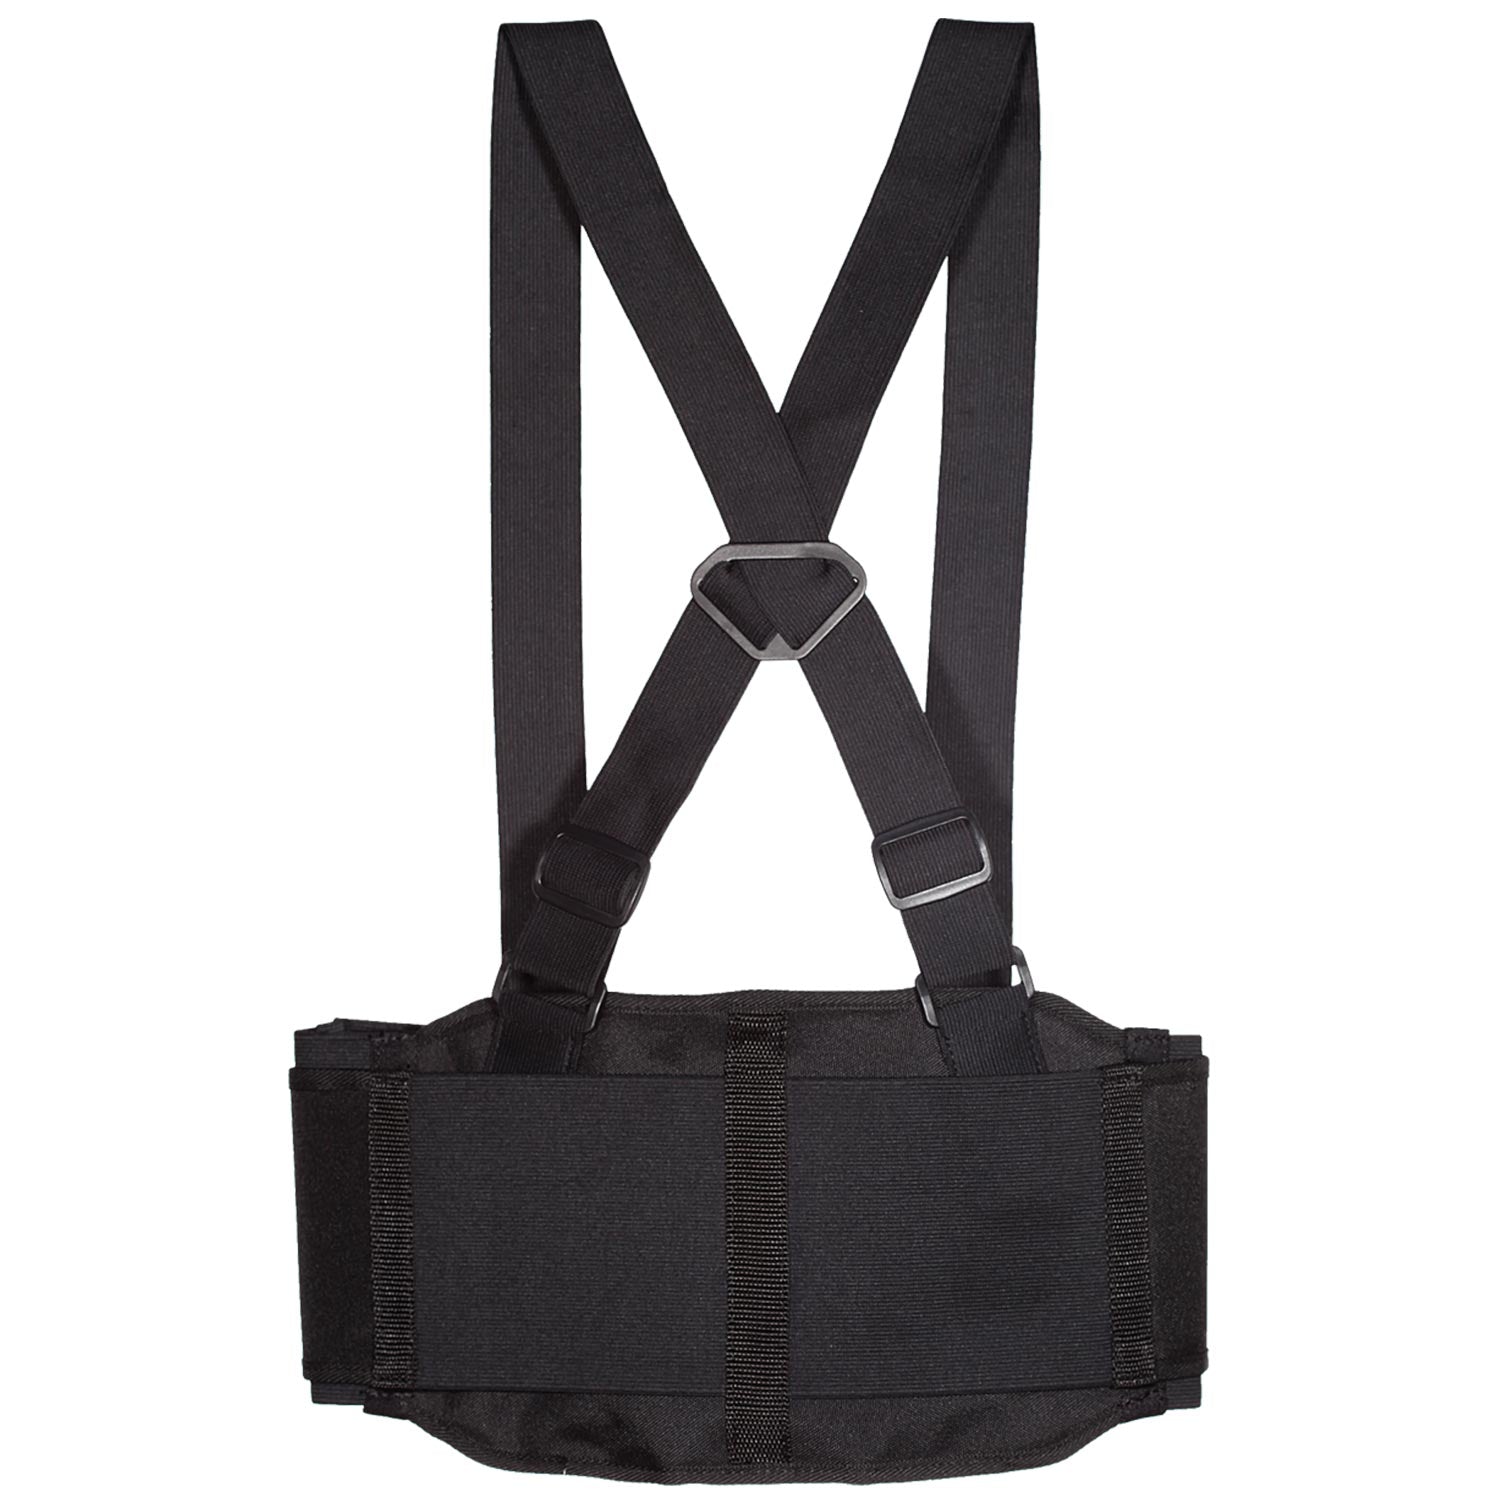 LIFT Safety - STRETCH Belt (Black)